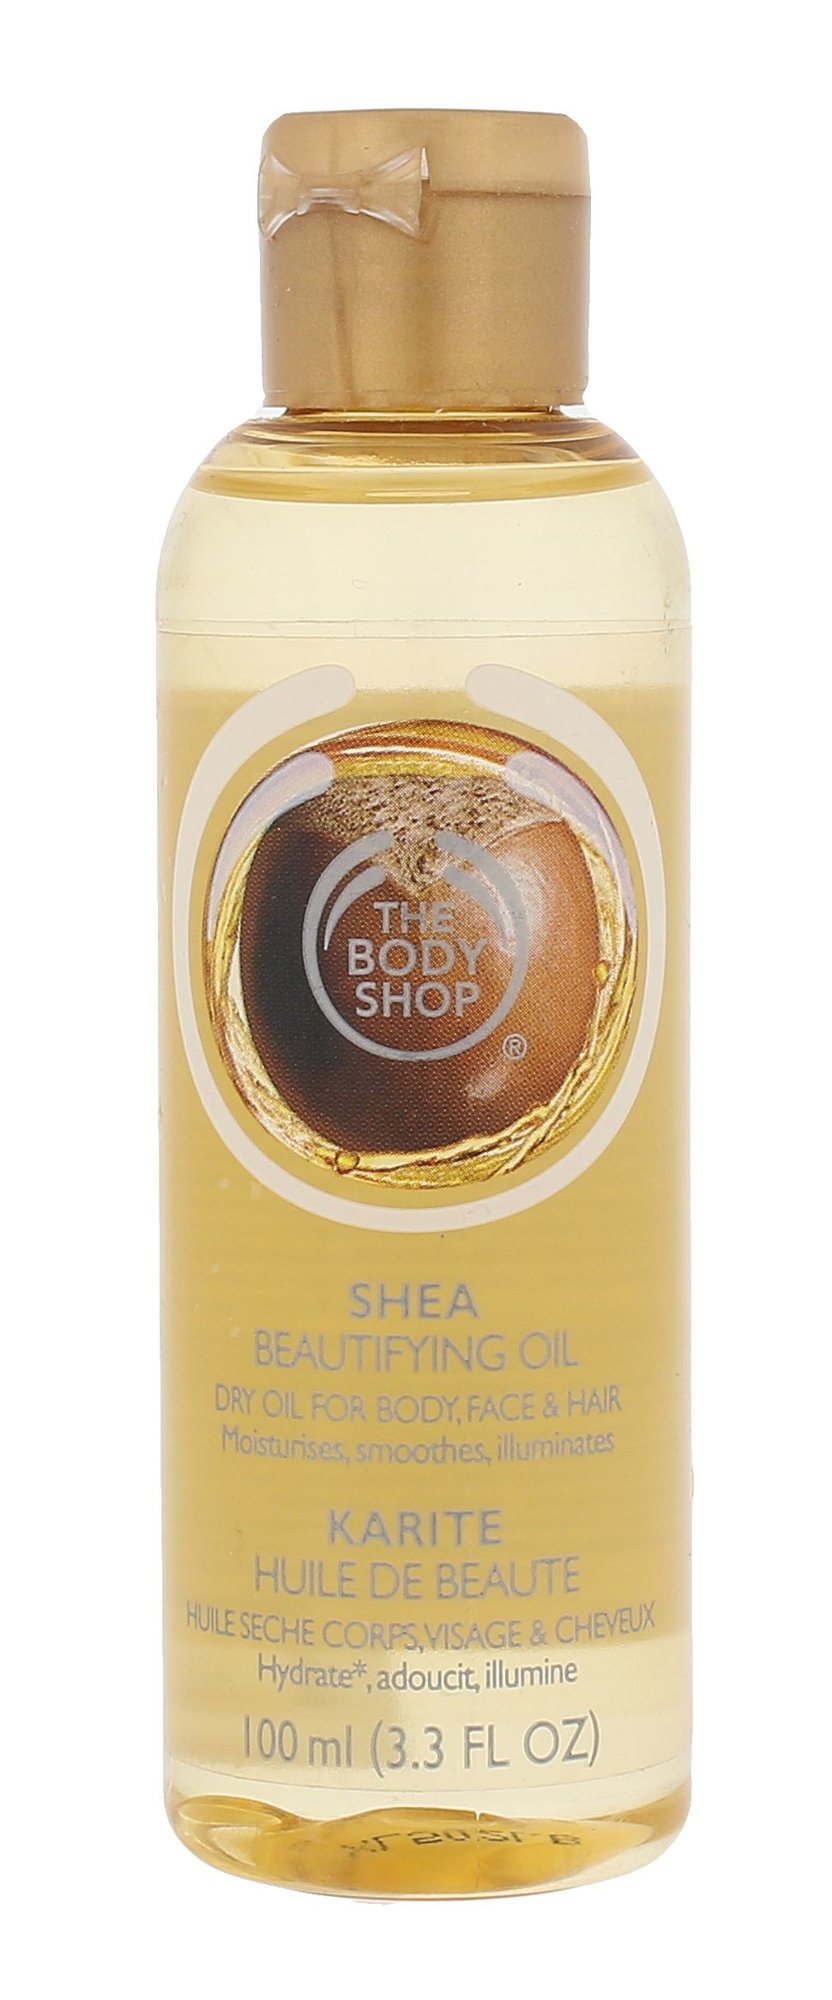 The Body Shop Shea Beautifying Oil